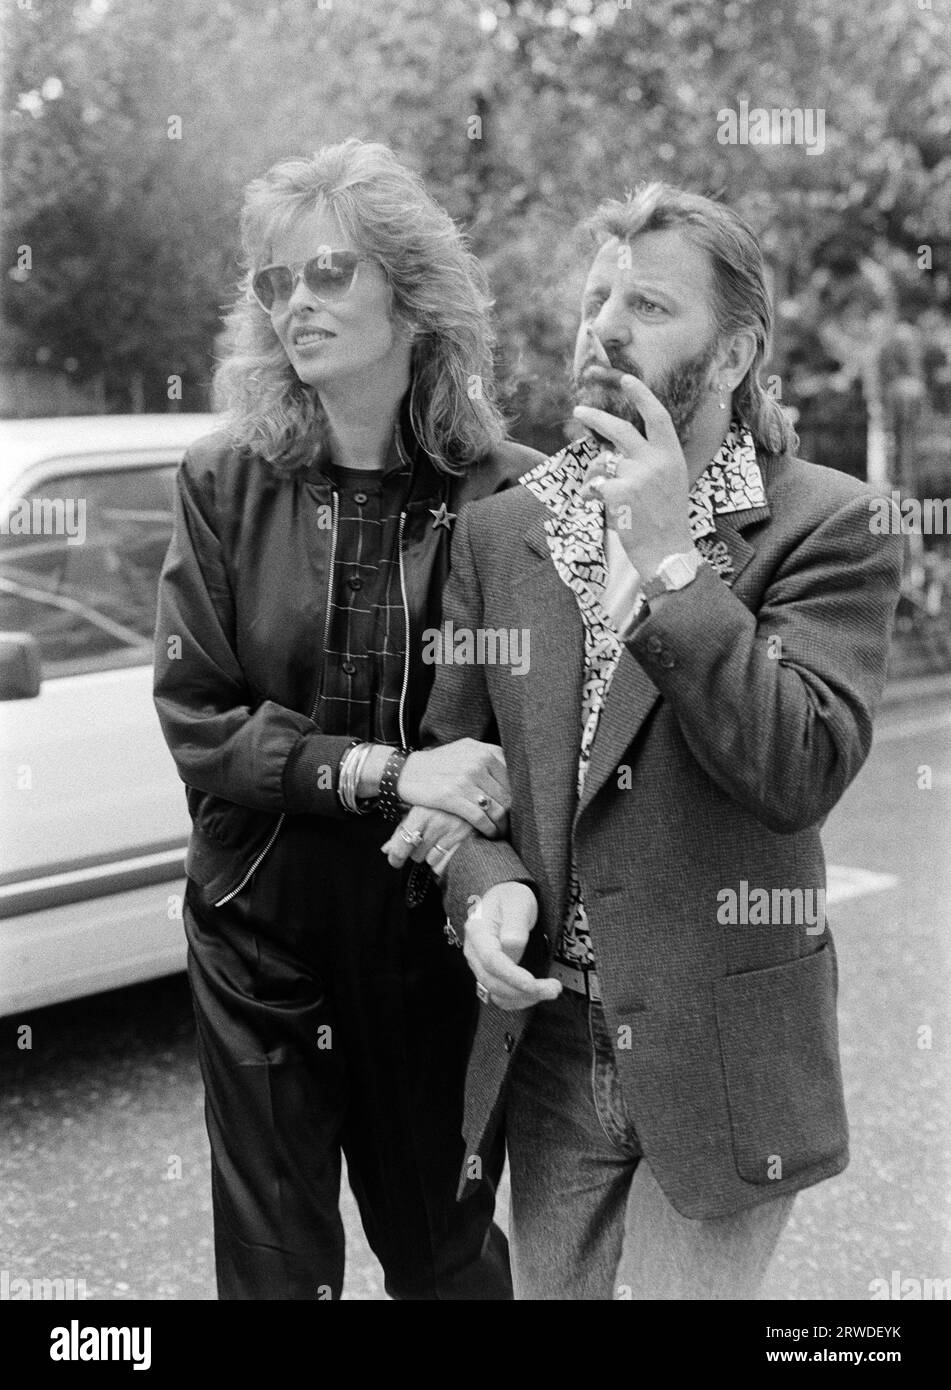 LONDRA, REGNO UNITO. Settembre 1986: L'ex Beatle Ringo Starr e la moglie Barbara Bach partecipano a un evento di moda di beneficenza a Londra. Foto del file © Paul Smith/Featureflash Foto Stock